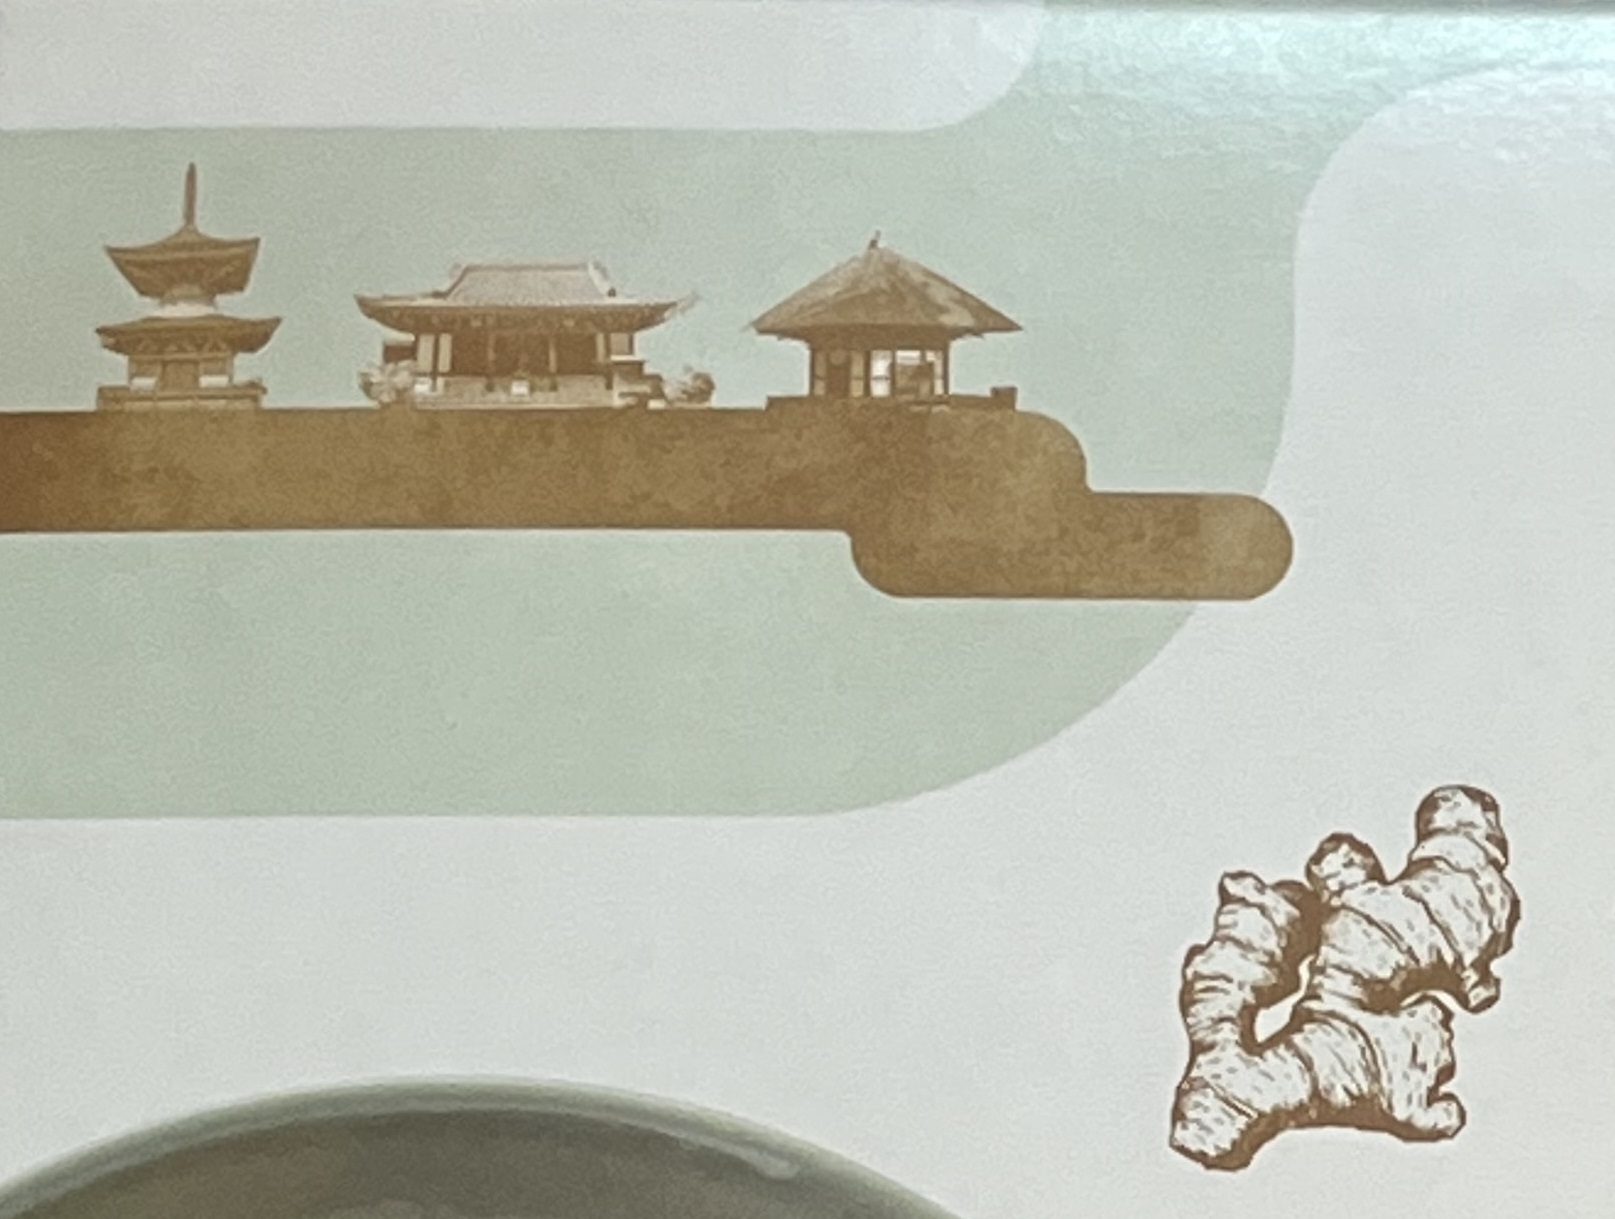 パッケージには真言宗3寺院を象徴した建物とショウガが描かれている